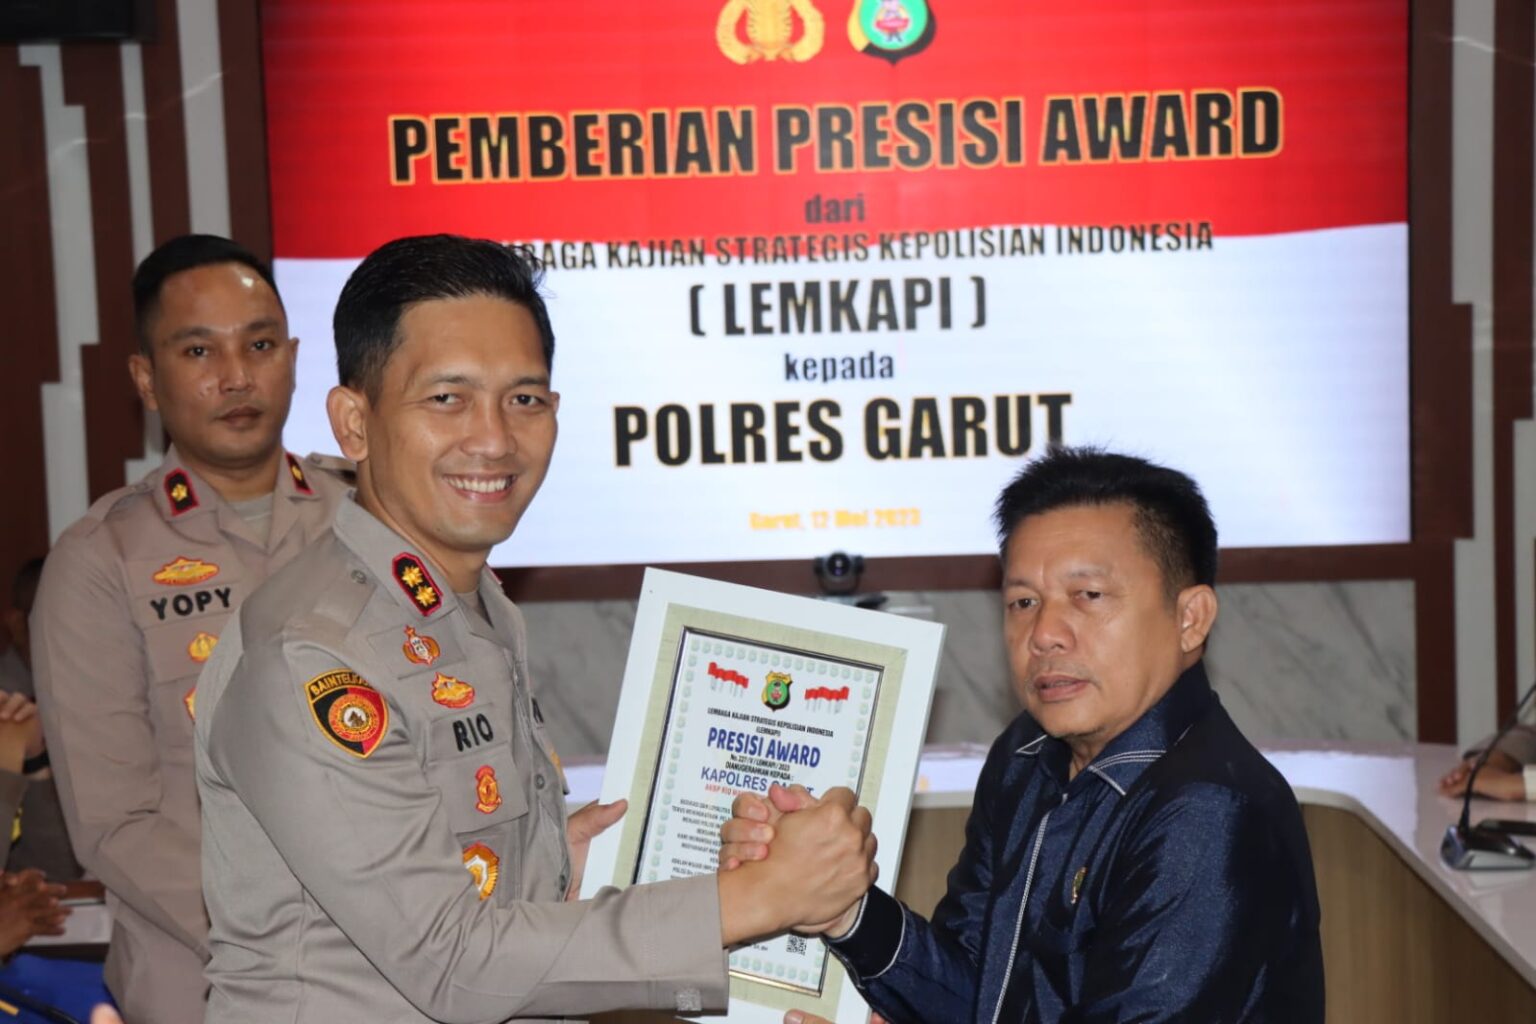 Kapolres Garut Raihan Presisi Award